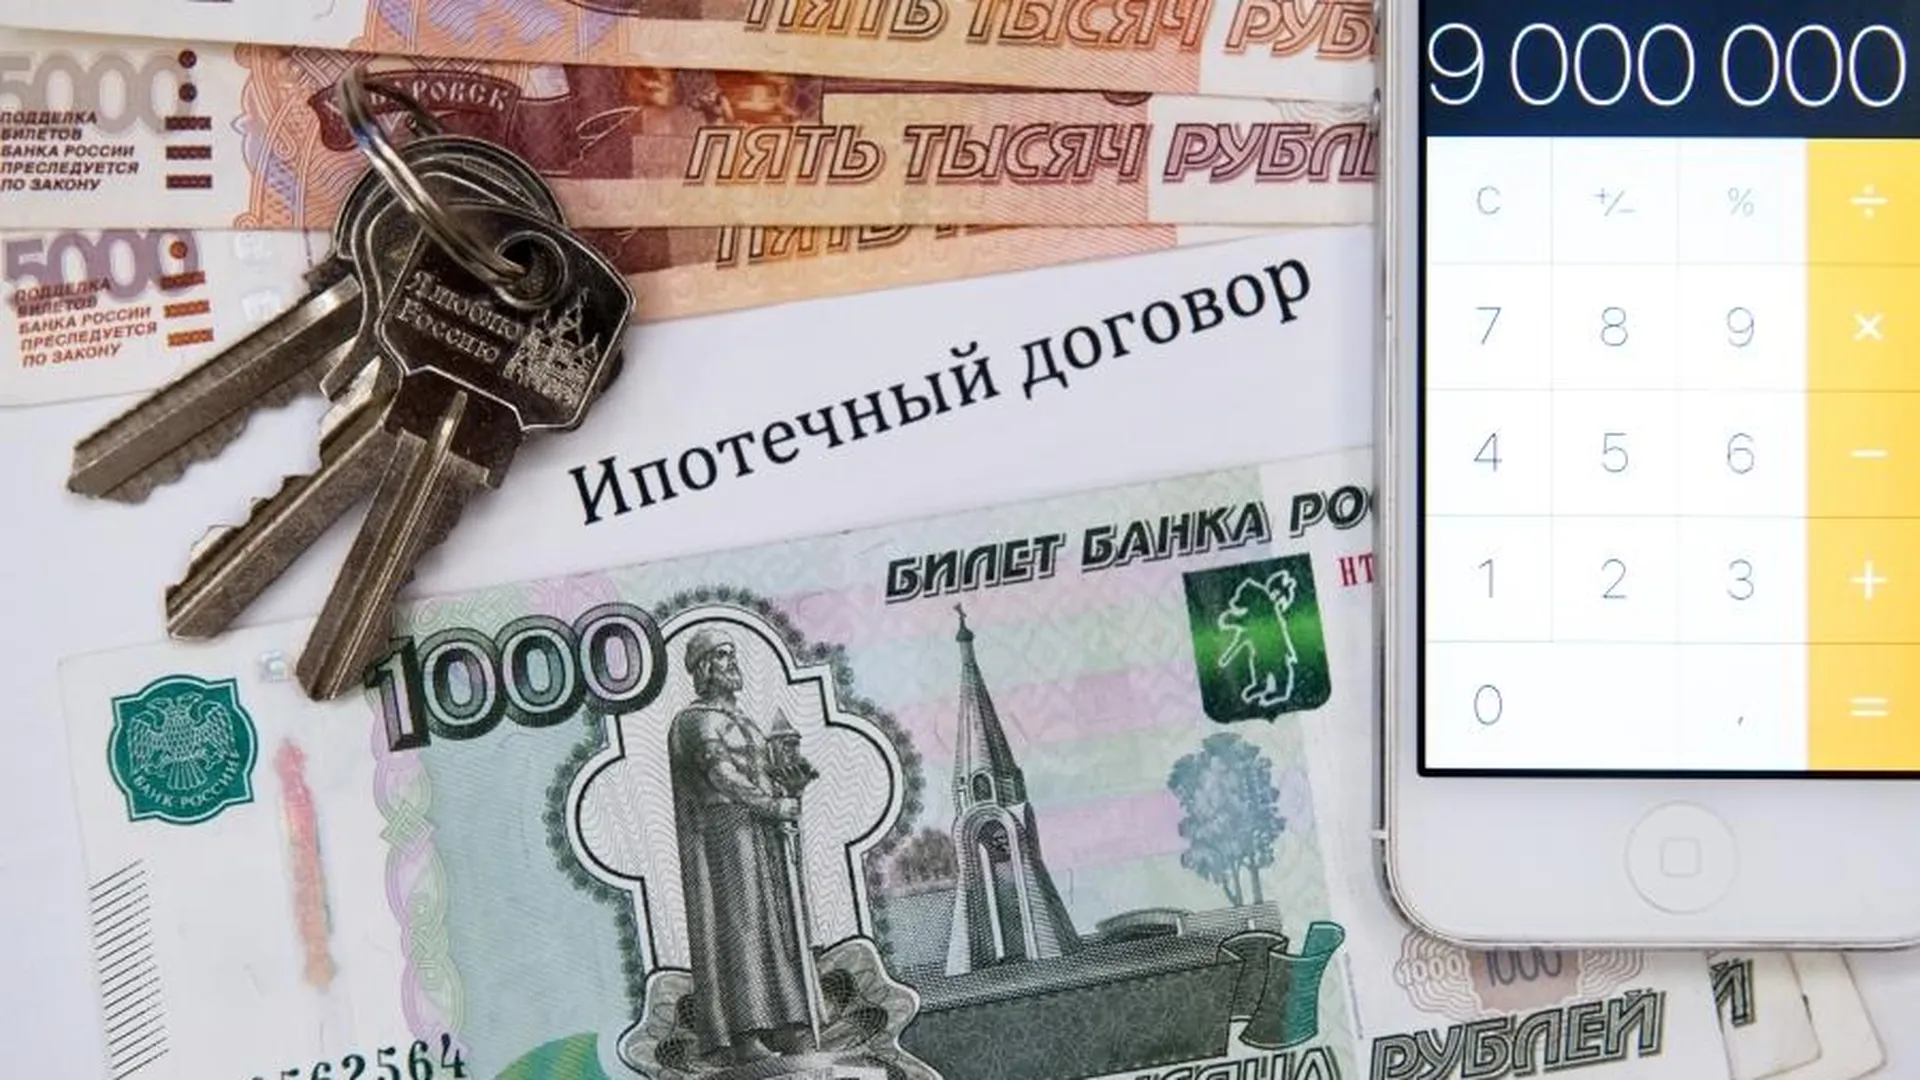 ВТБ: рост выдачи ипотеки на ИЖС достигнет рекордного 1 трлн рублей